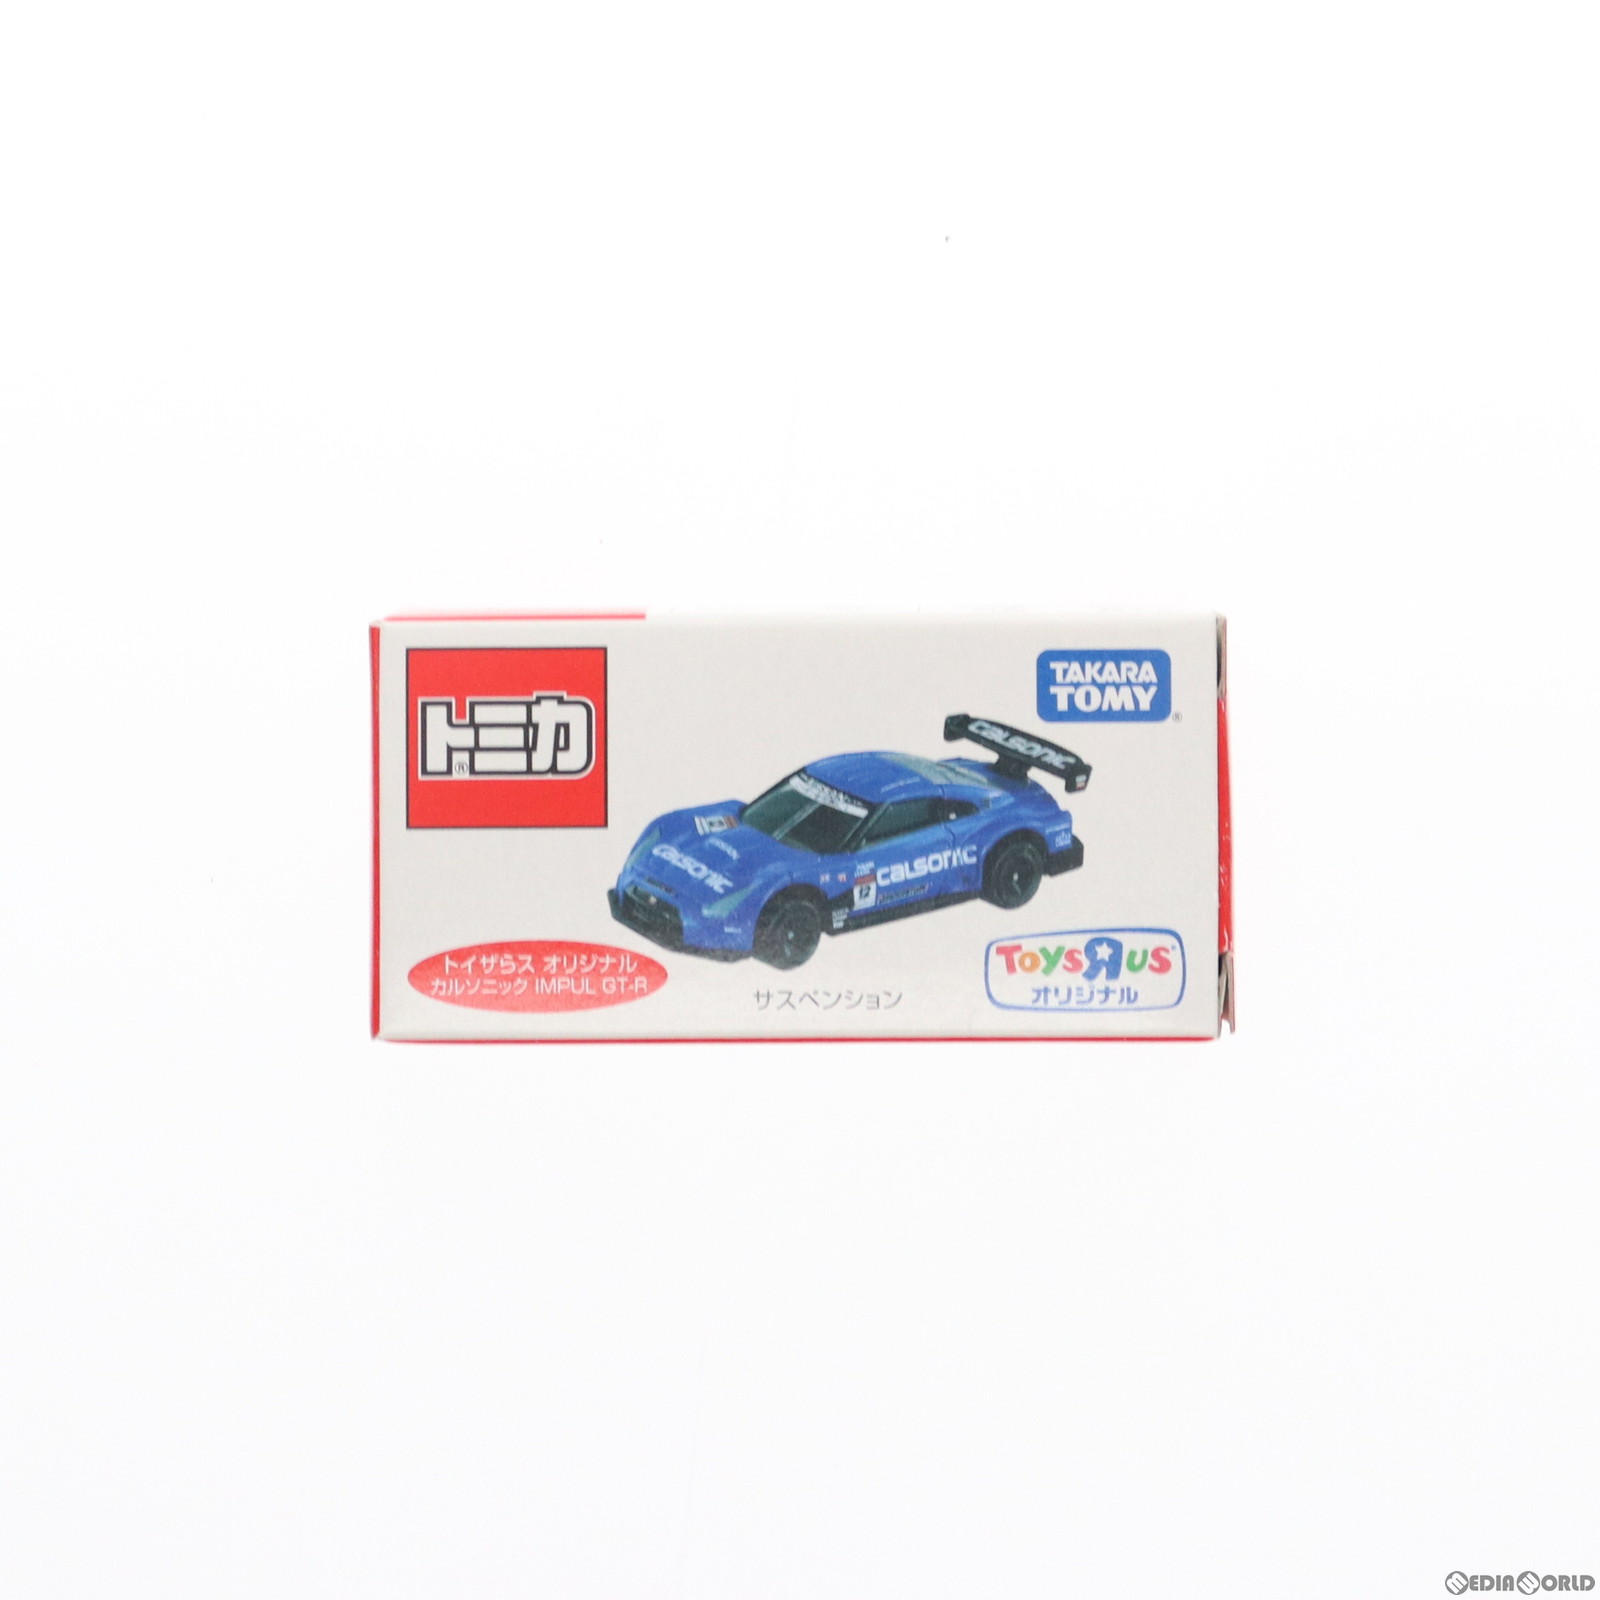 【中古】[MDL]トミカ 1/64 カルソニック IMPUL GT-R(ブルー) トイザらスオリジナル 完成品 ミニカー タカラトミー(20150101)